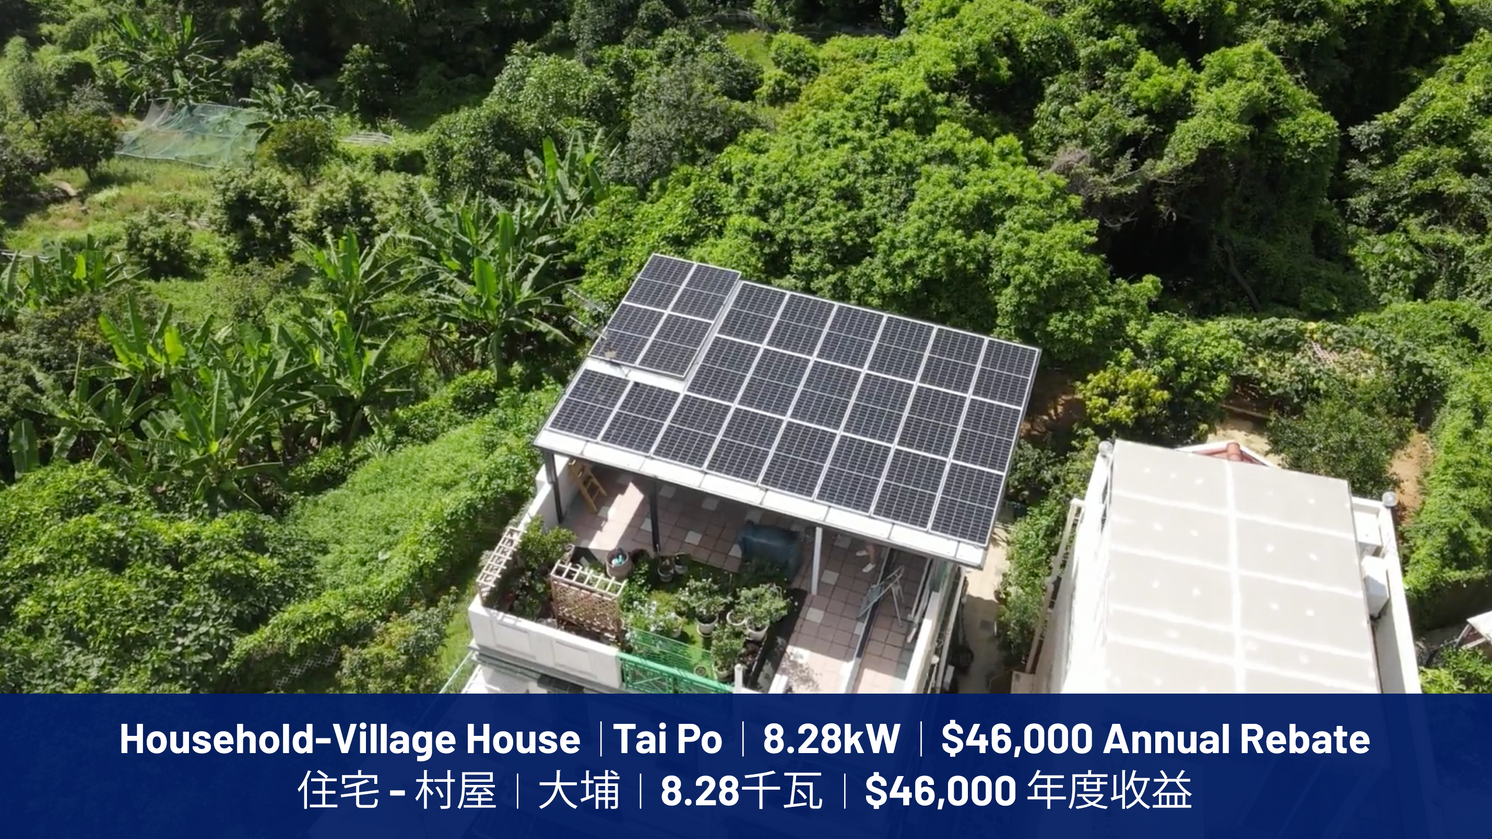 Household-Village House | Tai Po | 7.935kW | $45,000 Annual Rebate